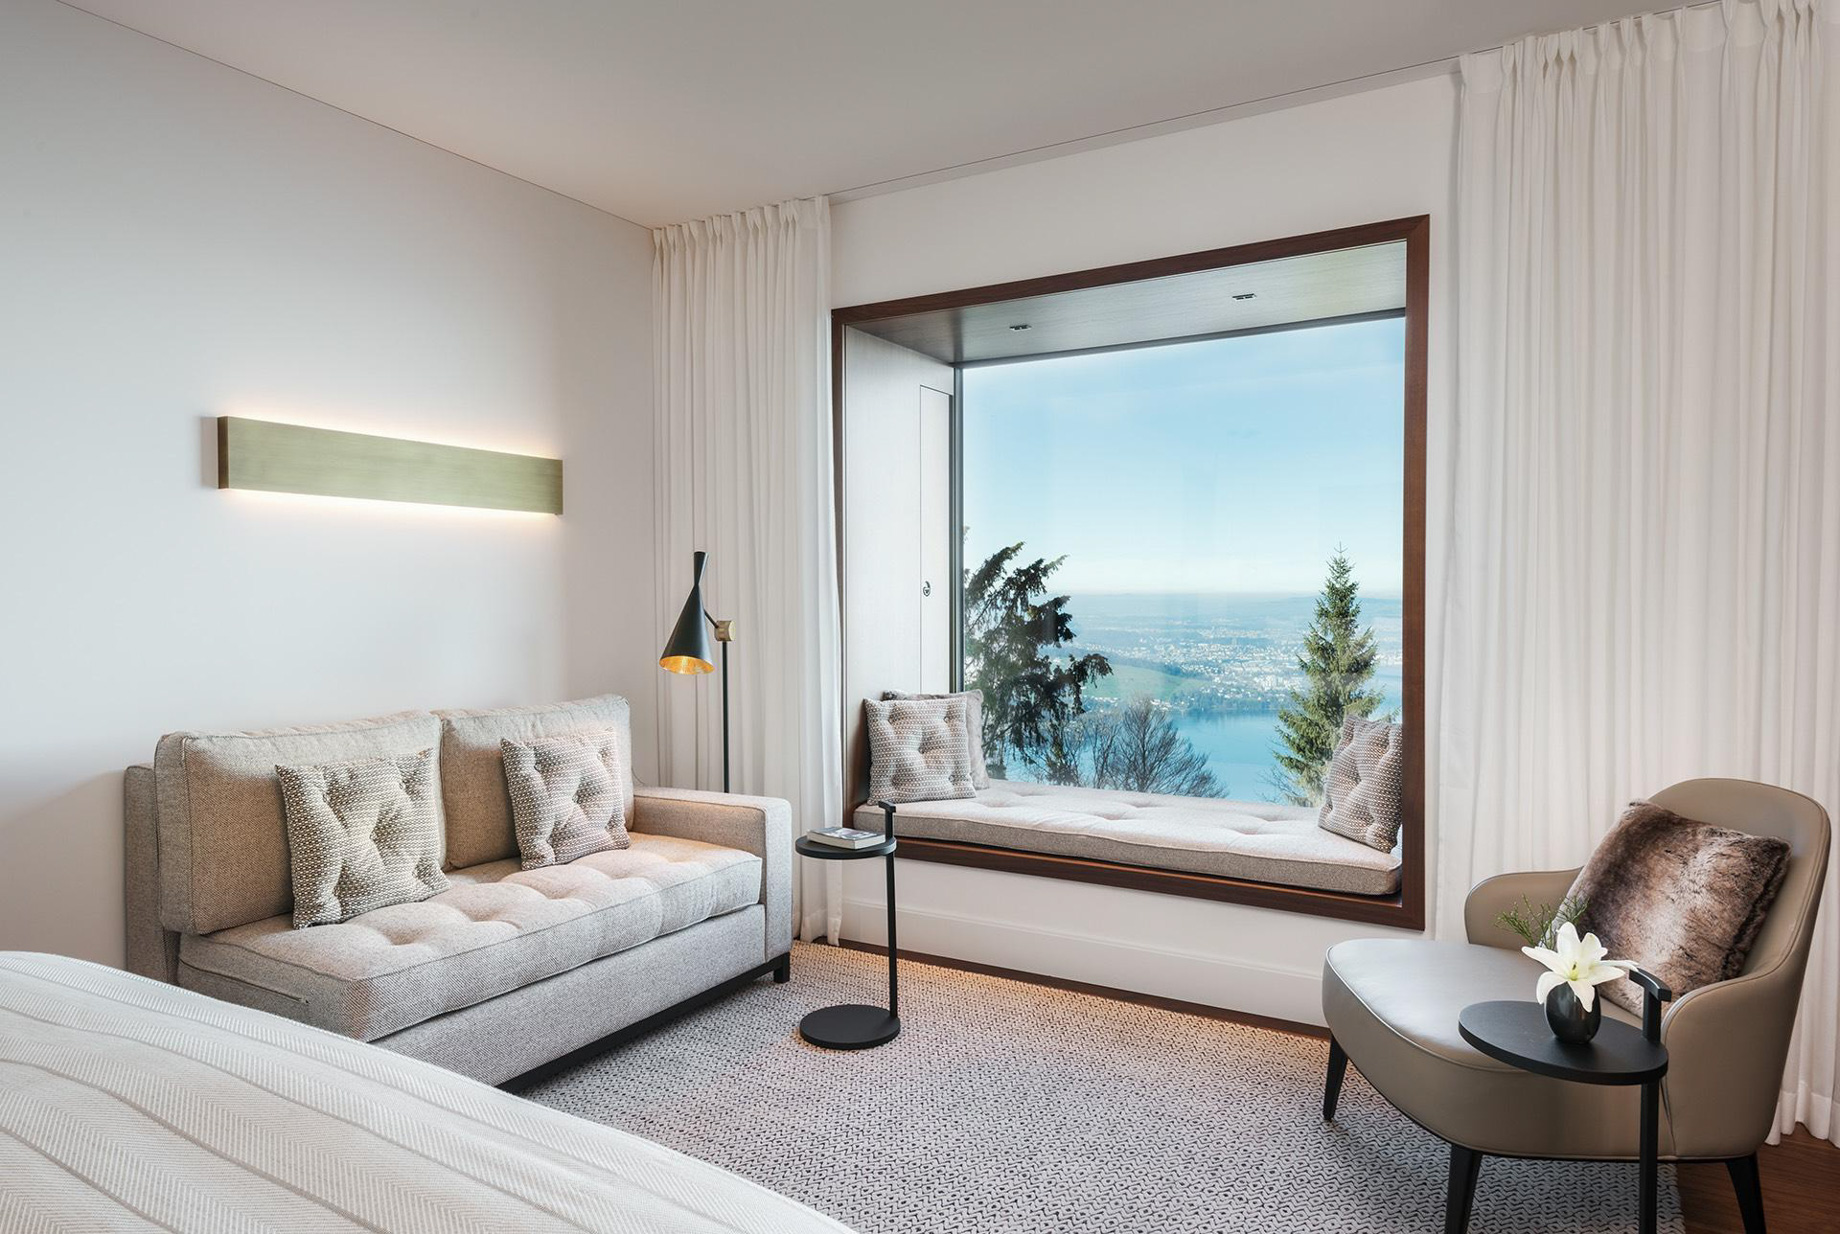 Burgenstock Hotel & Alpine Spa – Obburgen, Switzerland – Panoramic Suite Bedroom Window Seating